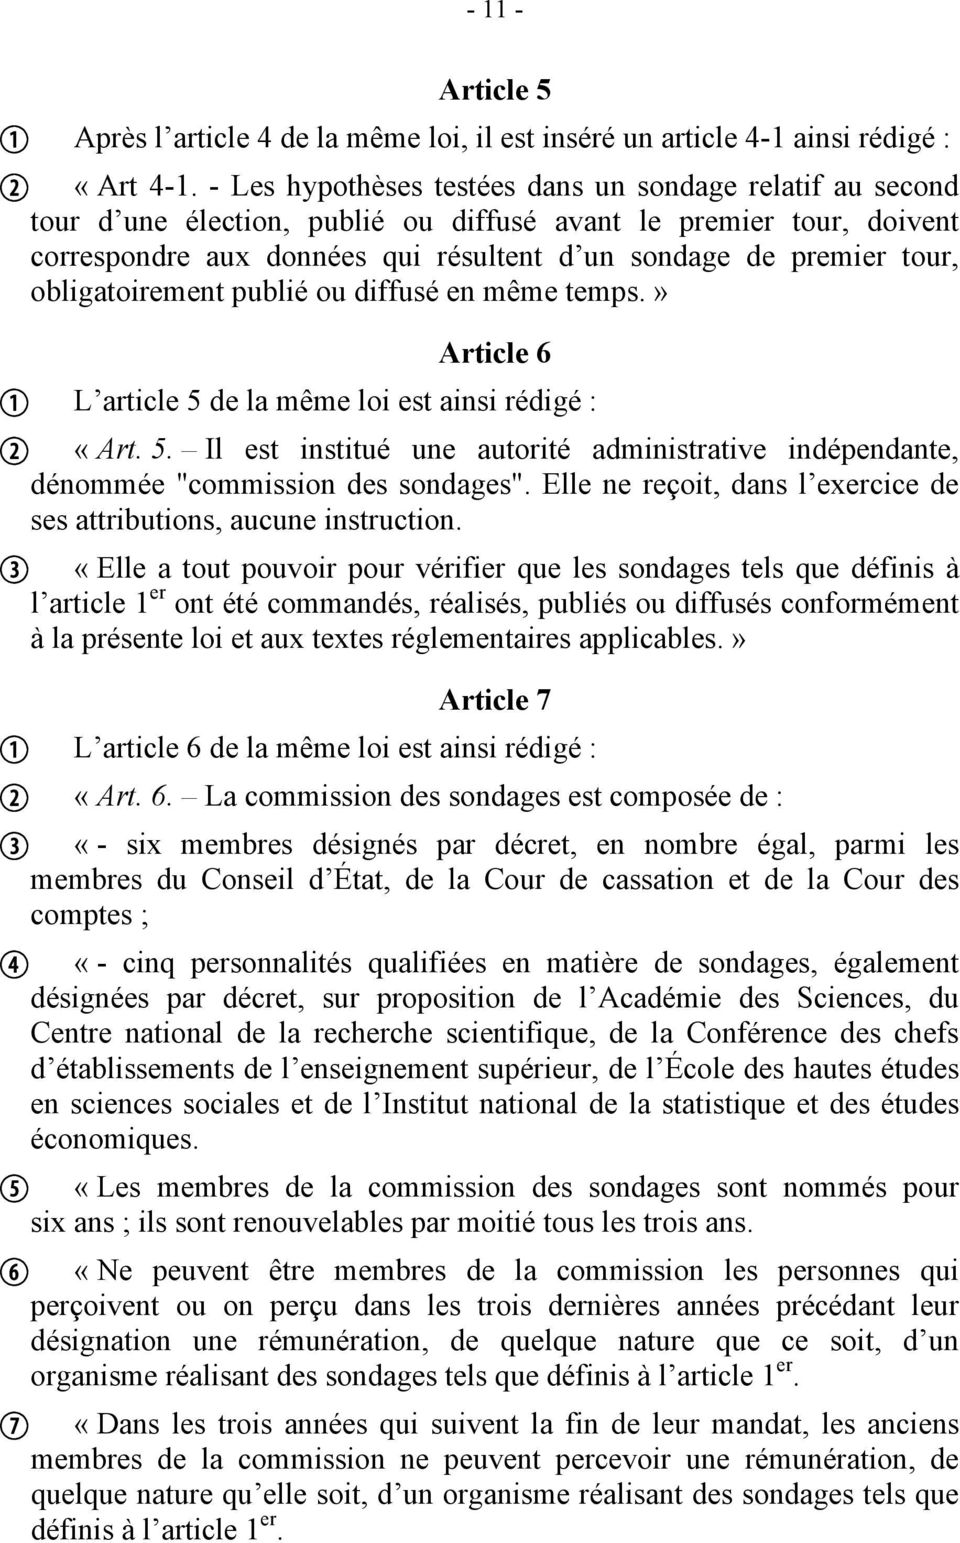 obligatoirement publié ou diffusé en même temps.» Article 6 L article 5 de la même loi est ainsi rédigé : «Art. 5. Il est institué une autorité administrative indépendante, dénommée "commission des sondages".